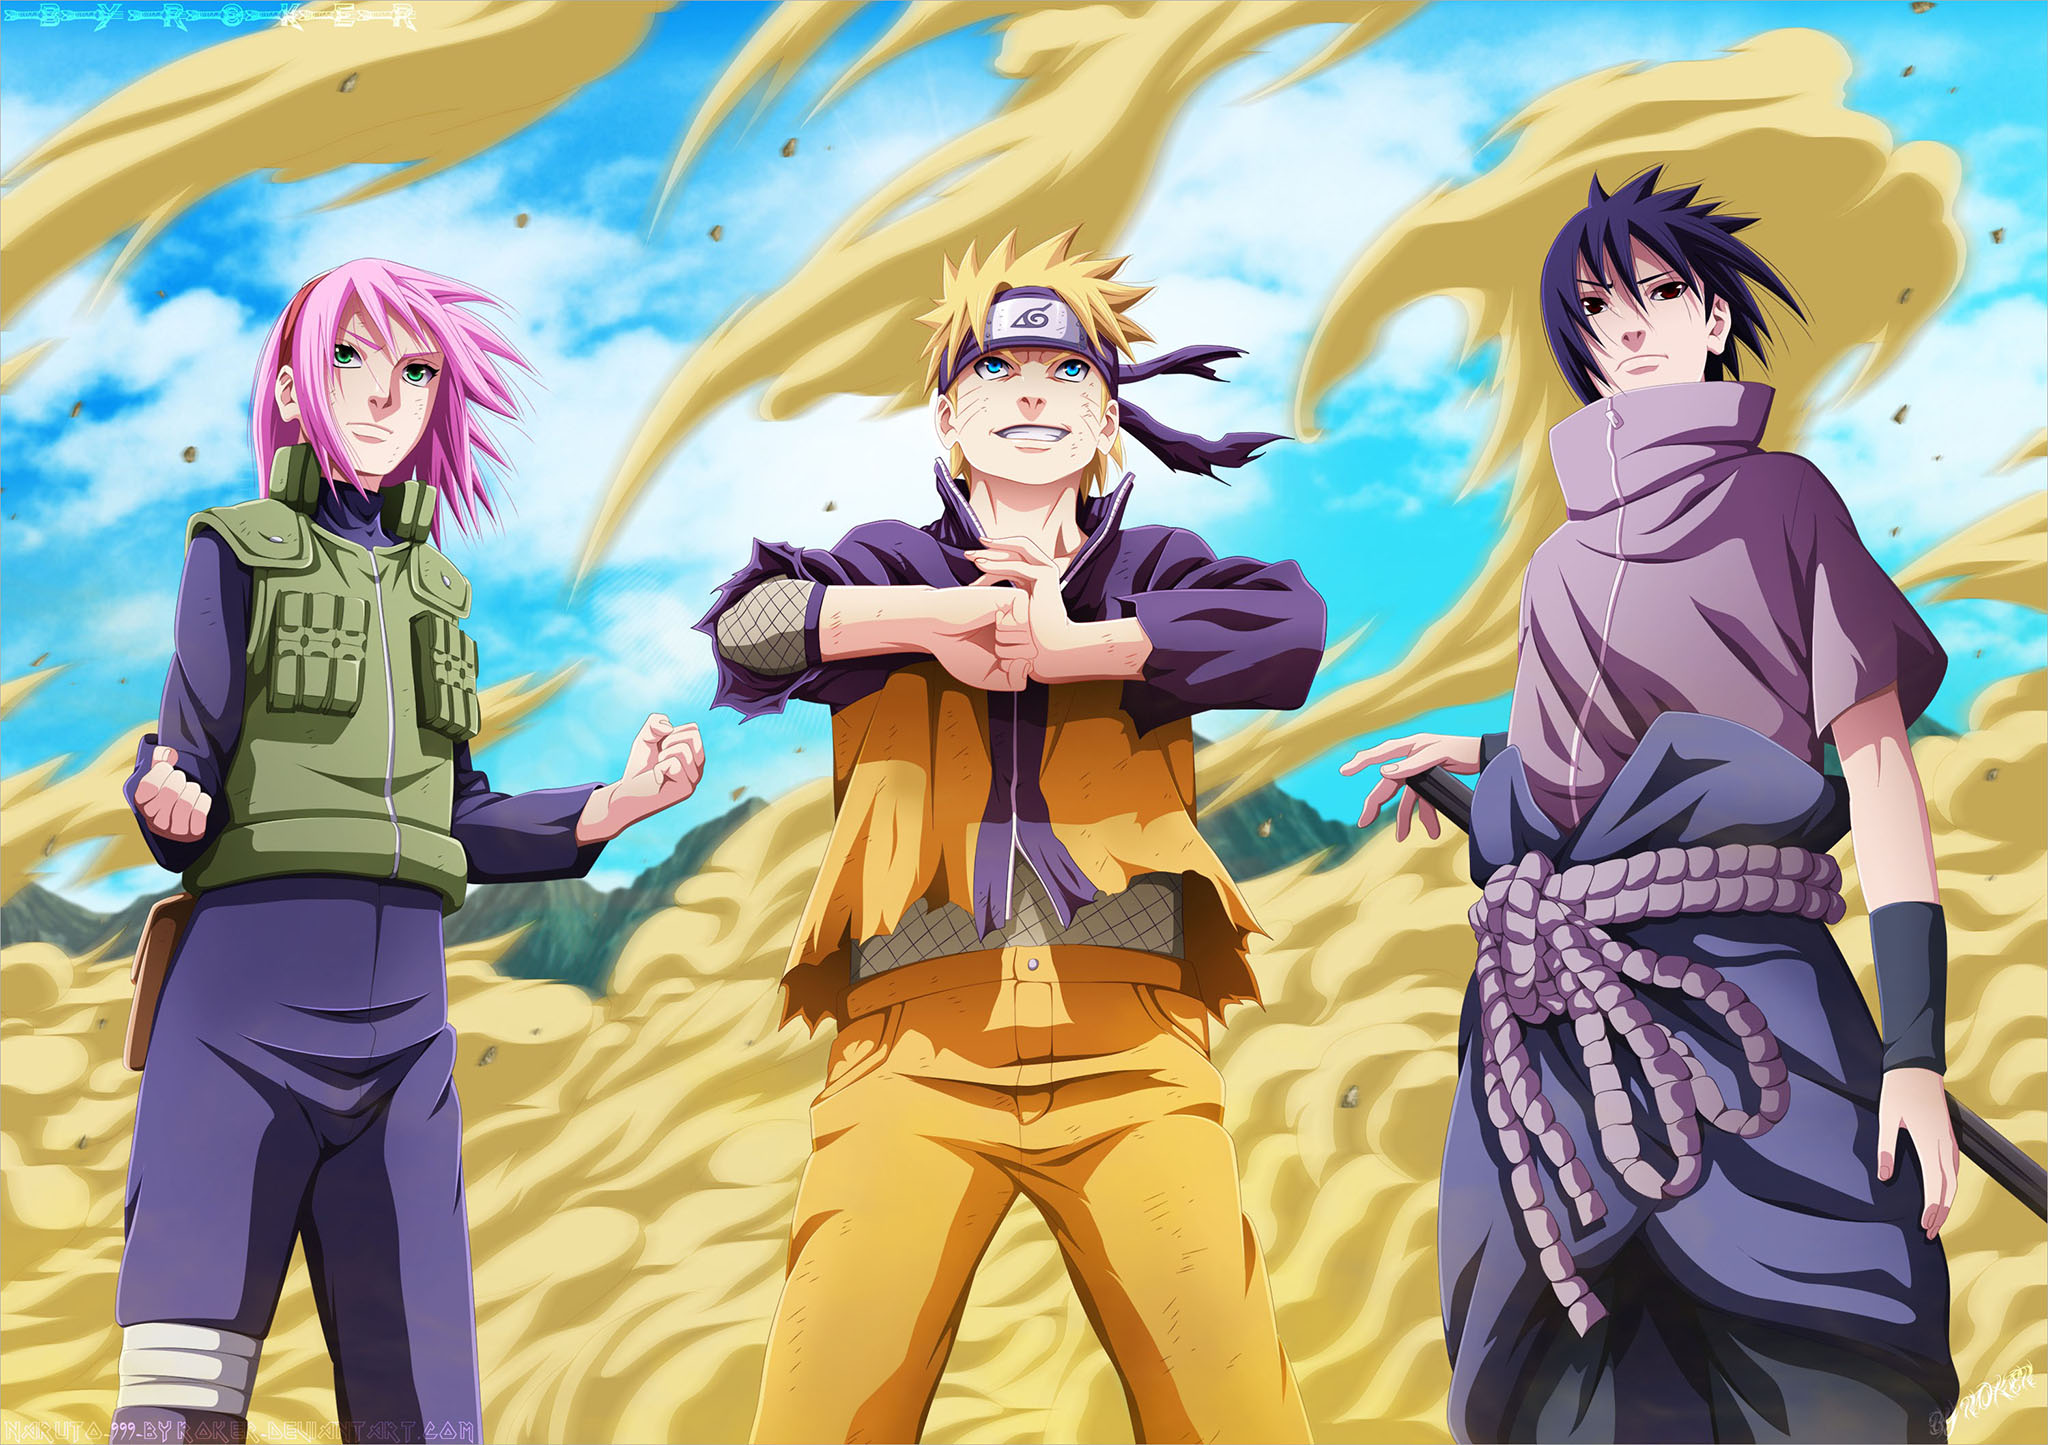 Anime Naruto đã lập kỉ lục khi trở thành series phim dài tập được yêu thích nhất trong lịch sử nền tảng Crunchyroll. Hình ảnh cực kỳ bắt mắt này đã thể hiện rõ sự máu lửa và kịch tính của câu chuyện Naruto và các nhân vật tuyệt vời trong đó. Bạn không thể bỏ lỡ cơ hội để chứng kiến cuộc phiêu lưu và sức mạnh trong Anime này.